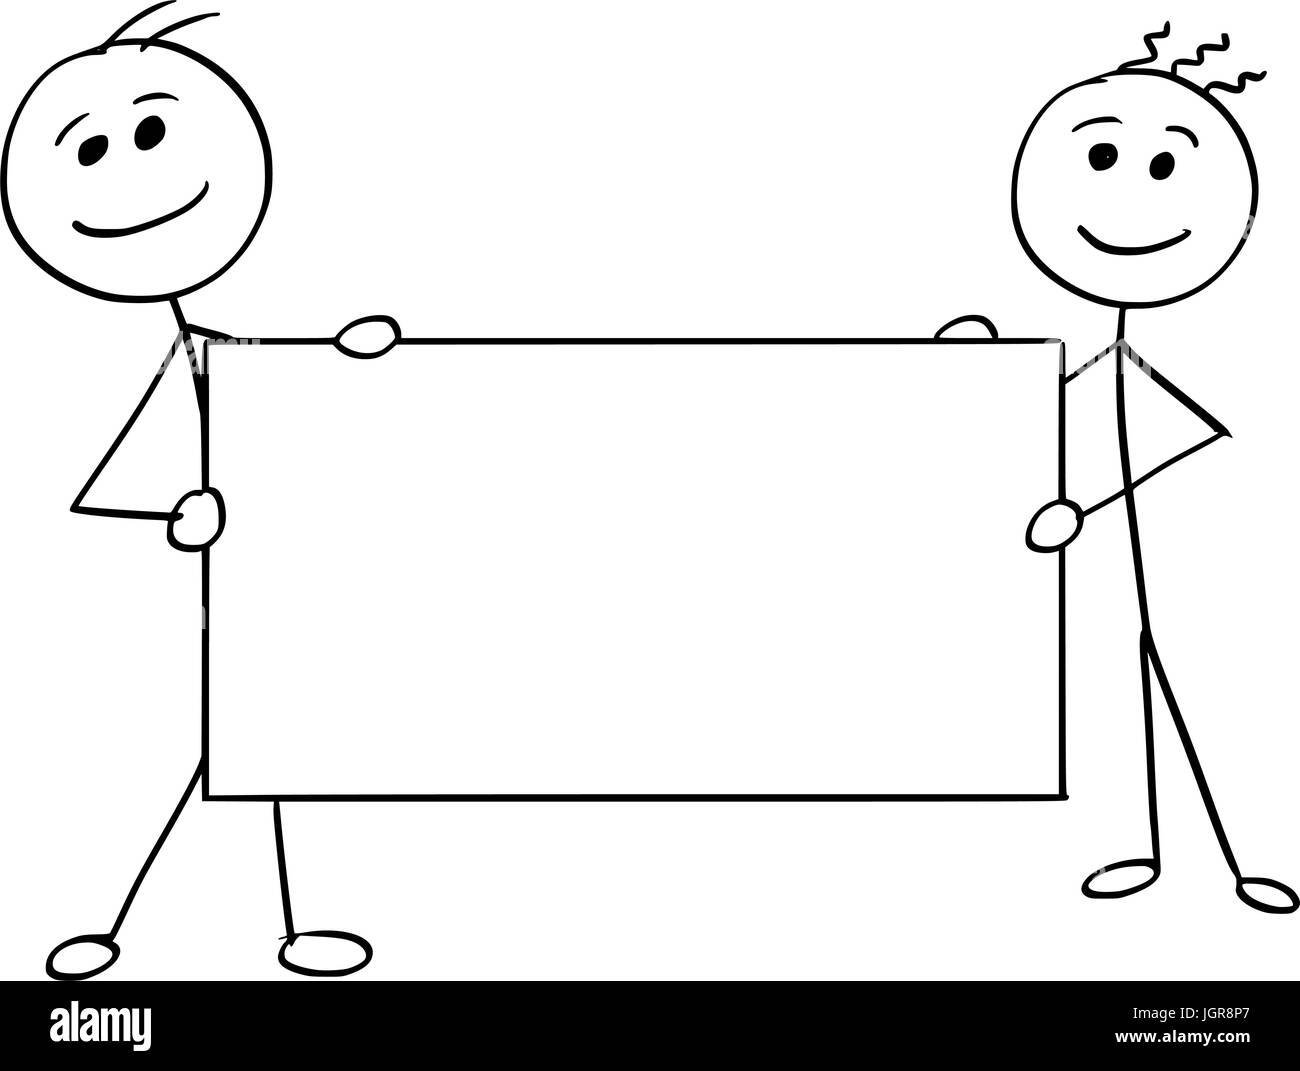 Cartoon Vector Stick Mann Stickman Zeichnung von zwei lächelnde Männer mit einem großen leeren Schild. Stock Vektor